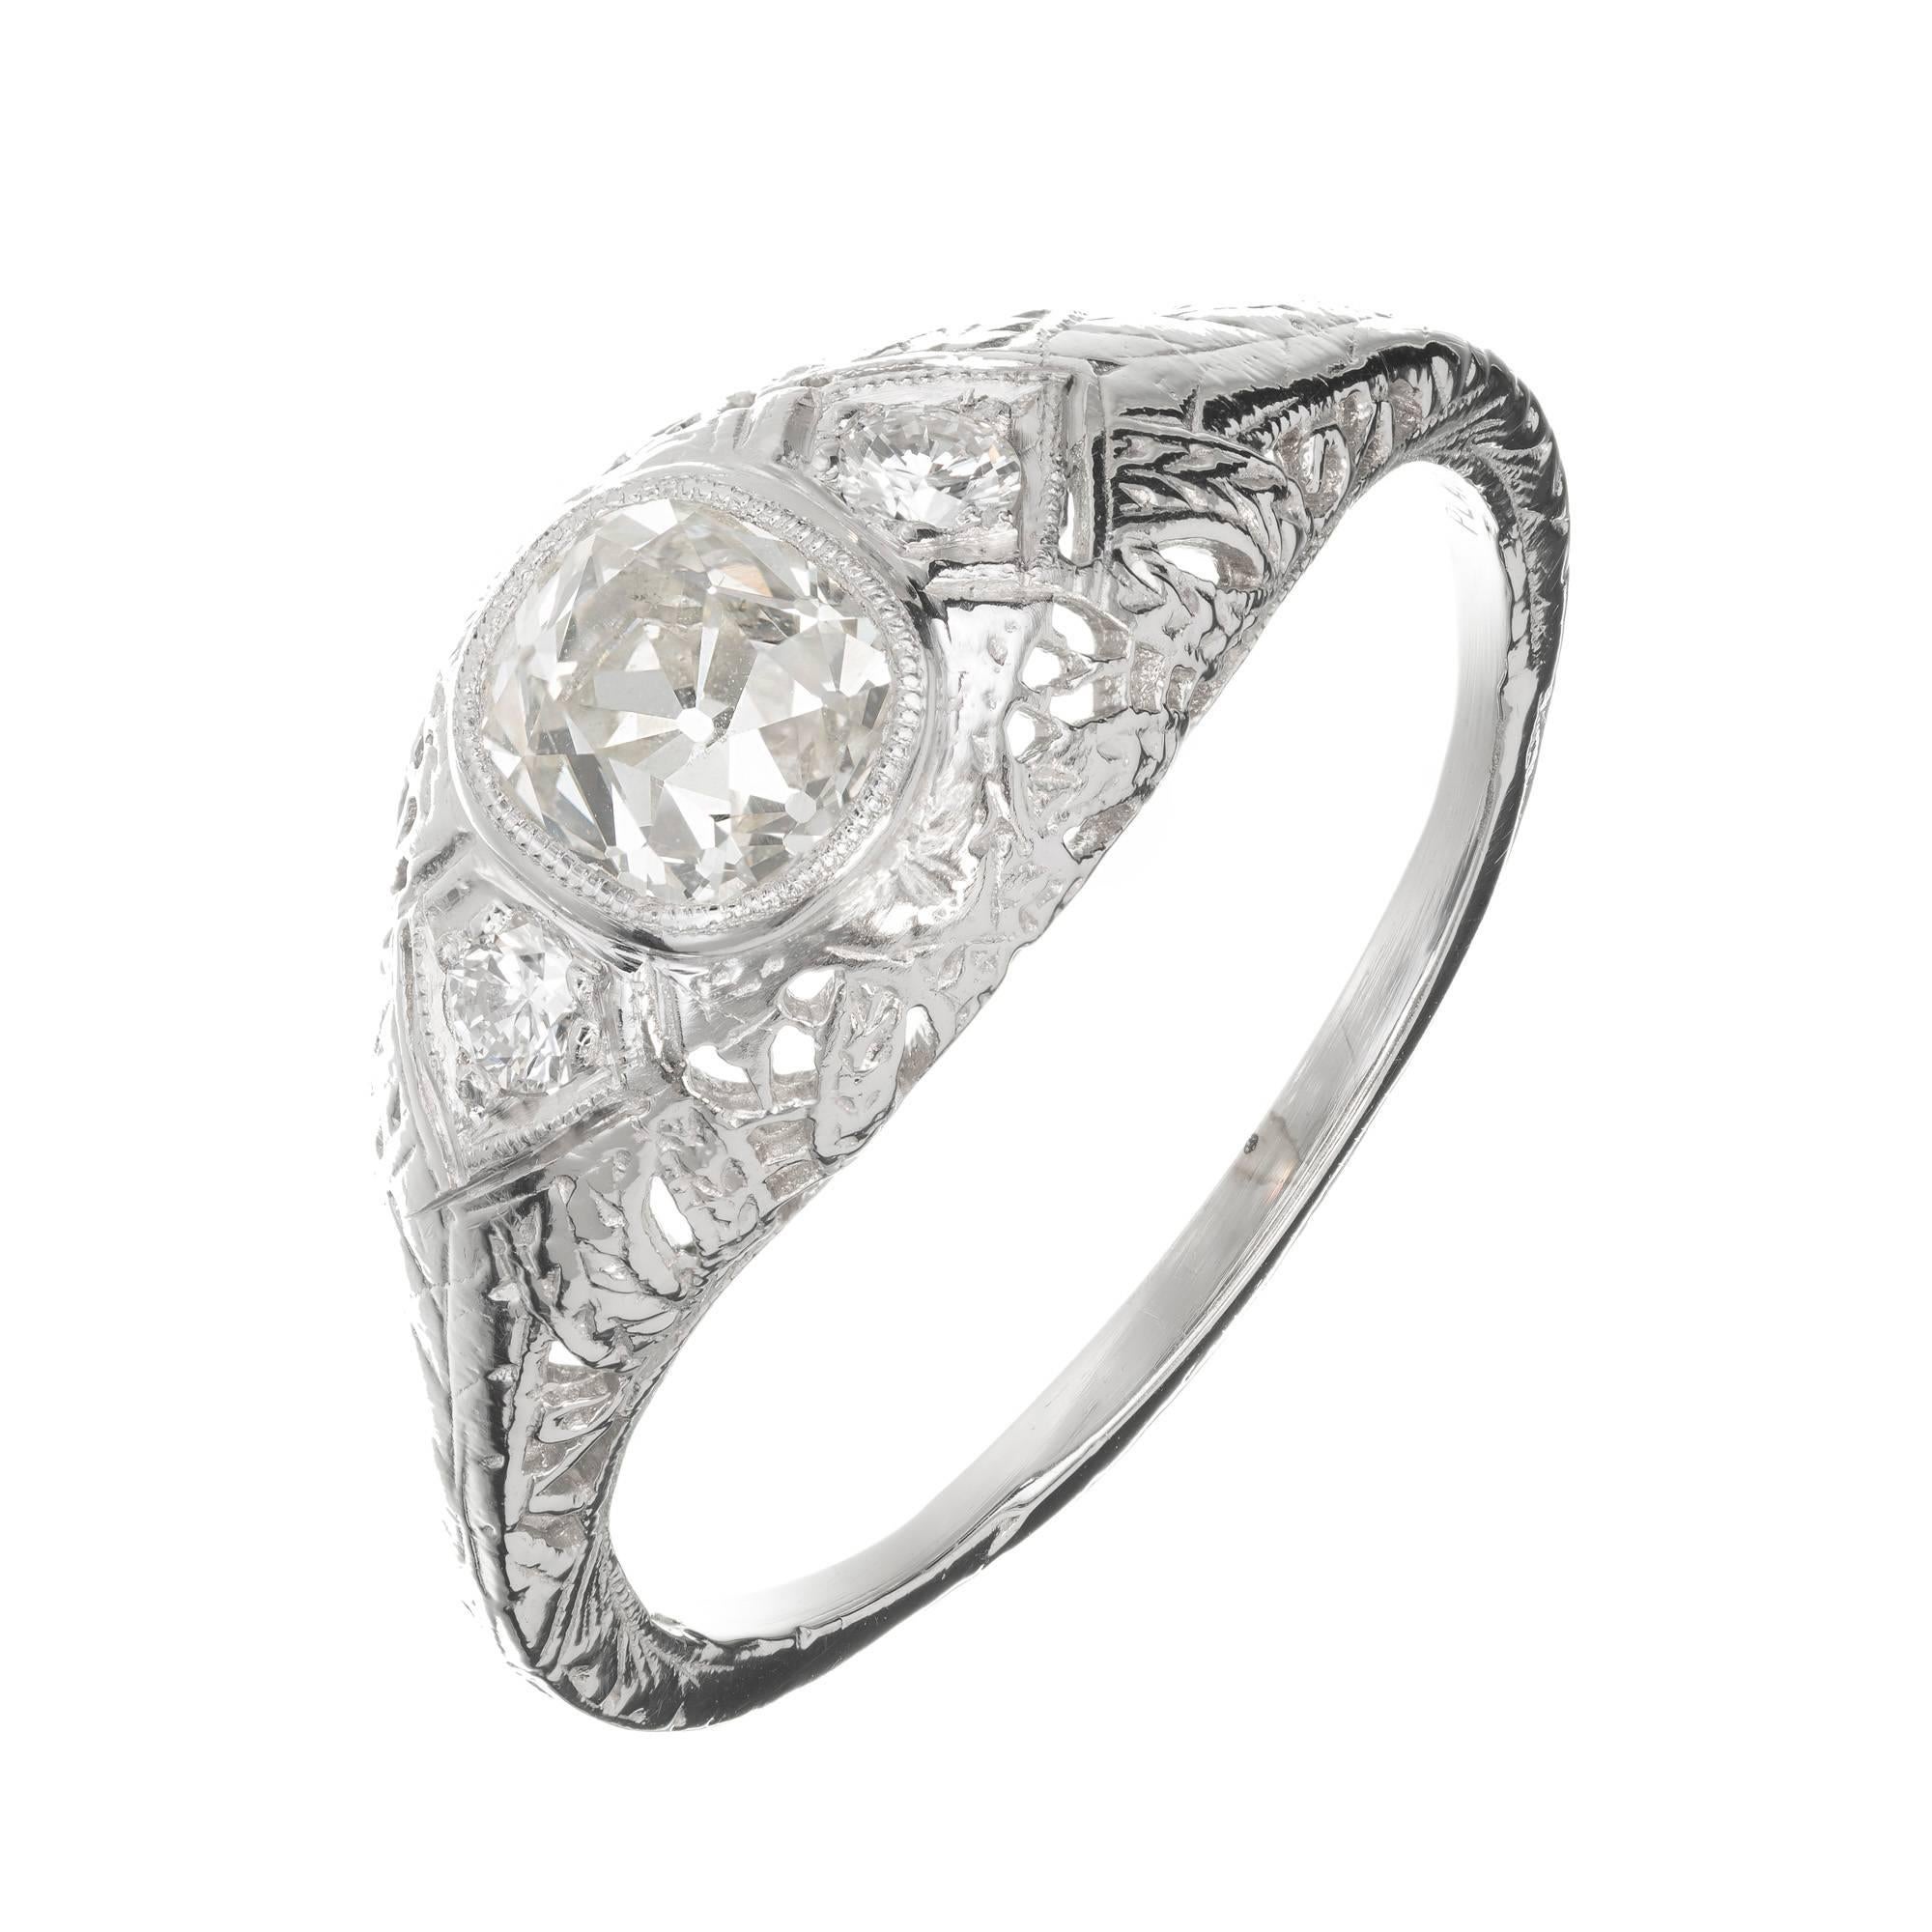 Egl Certified 1890s Antique 1.00 Carat Diamond Platinum Engagement Ring